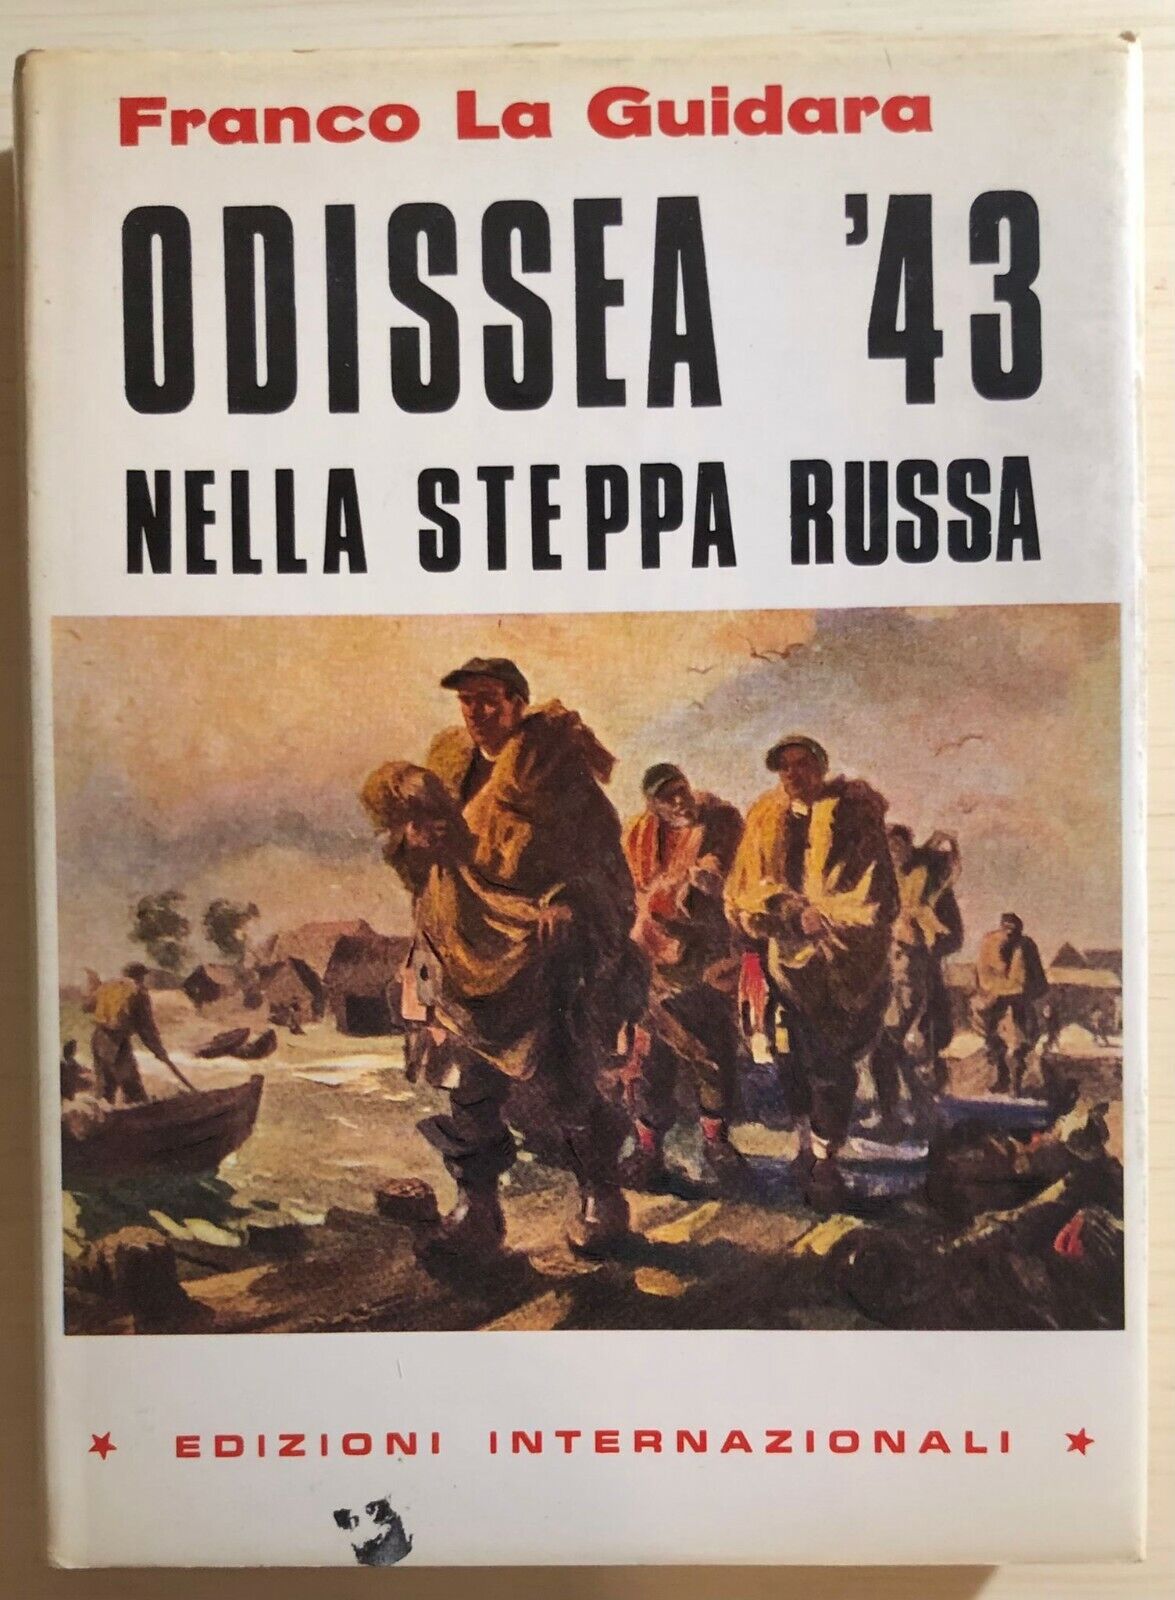 Odissea ?43 nella steppa russa di Franco La Guidara, 1981, Edizioni Internaziona